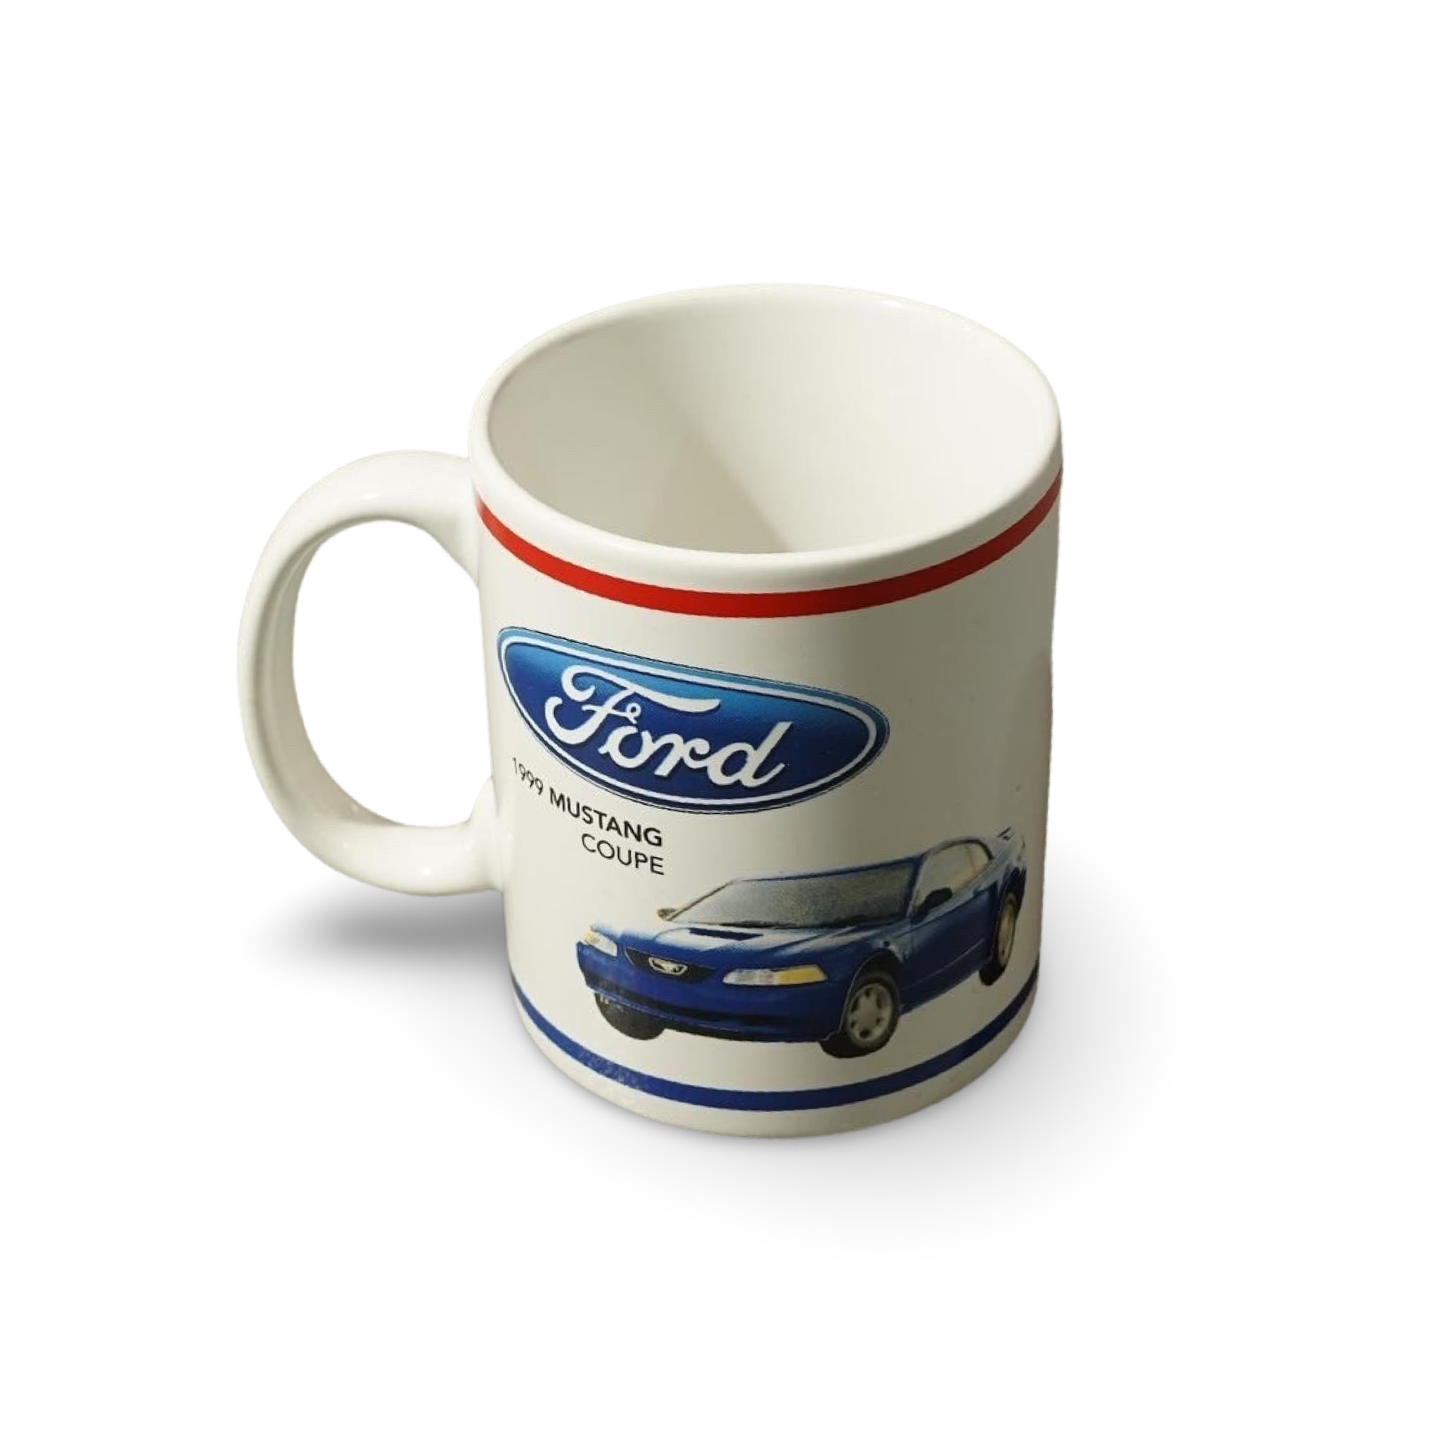 Ford 1999 MUSTANG Coupe Mug